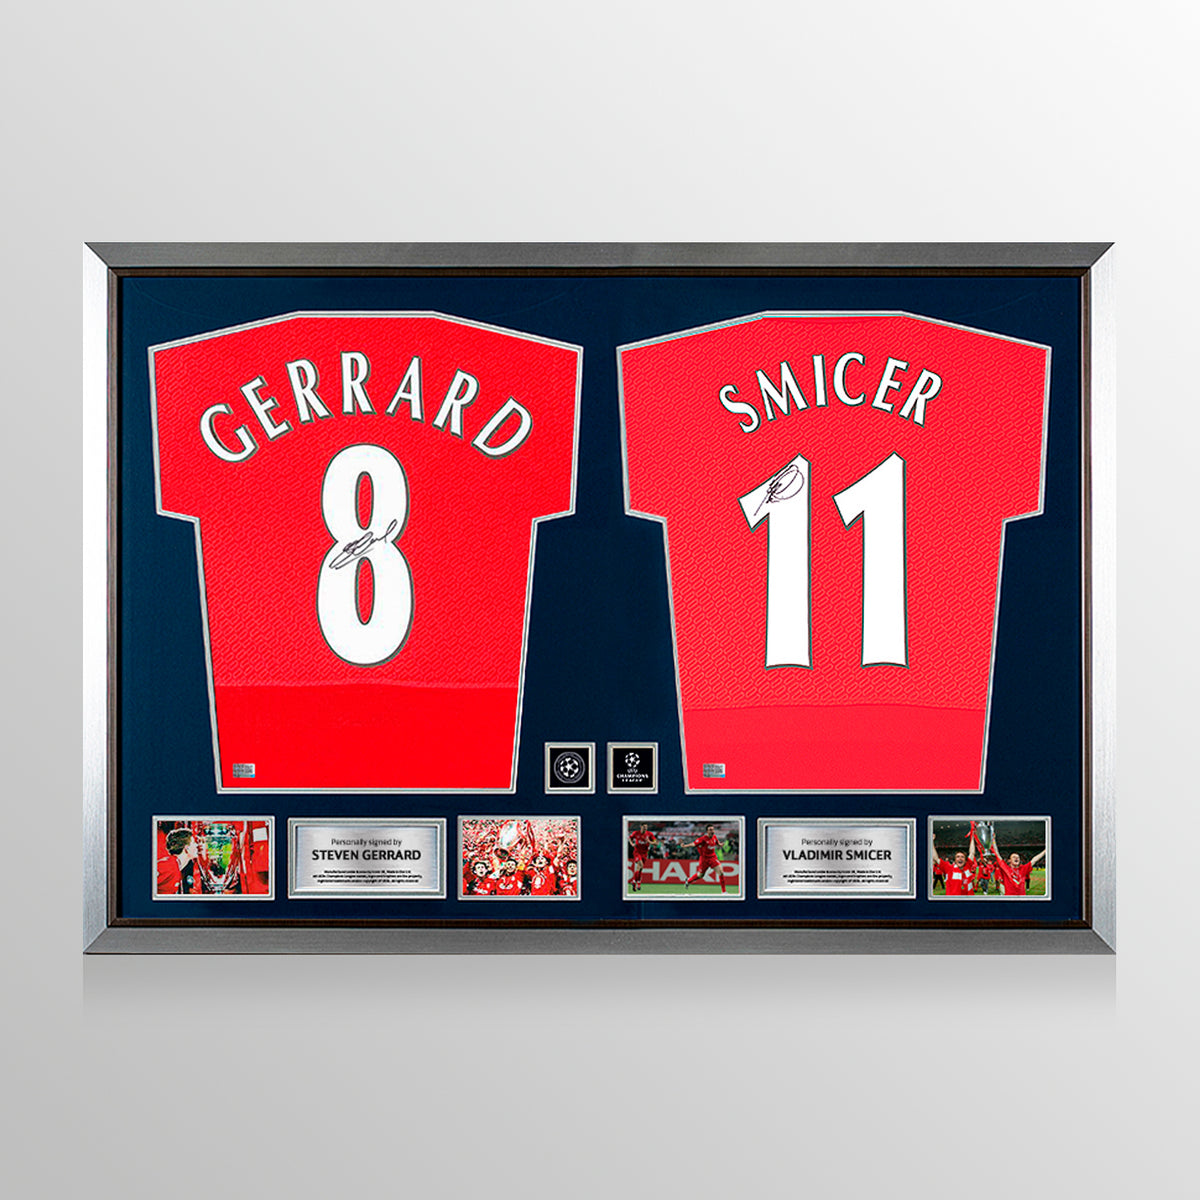 Steven Gerrard y Vladimir Smicer firmaron camisetas del Liverpool FC en el cuadro dual oficial de la UEFA Champions League